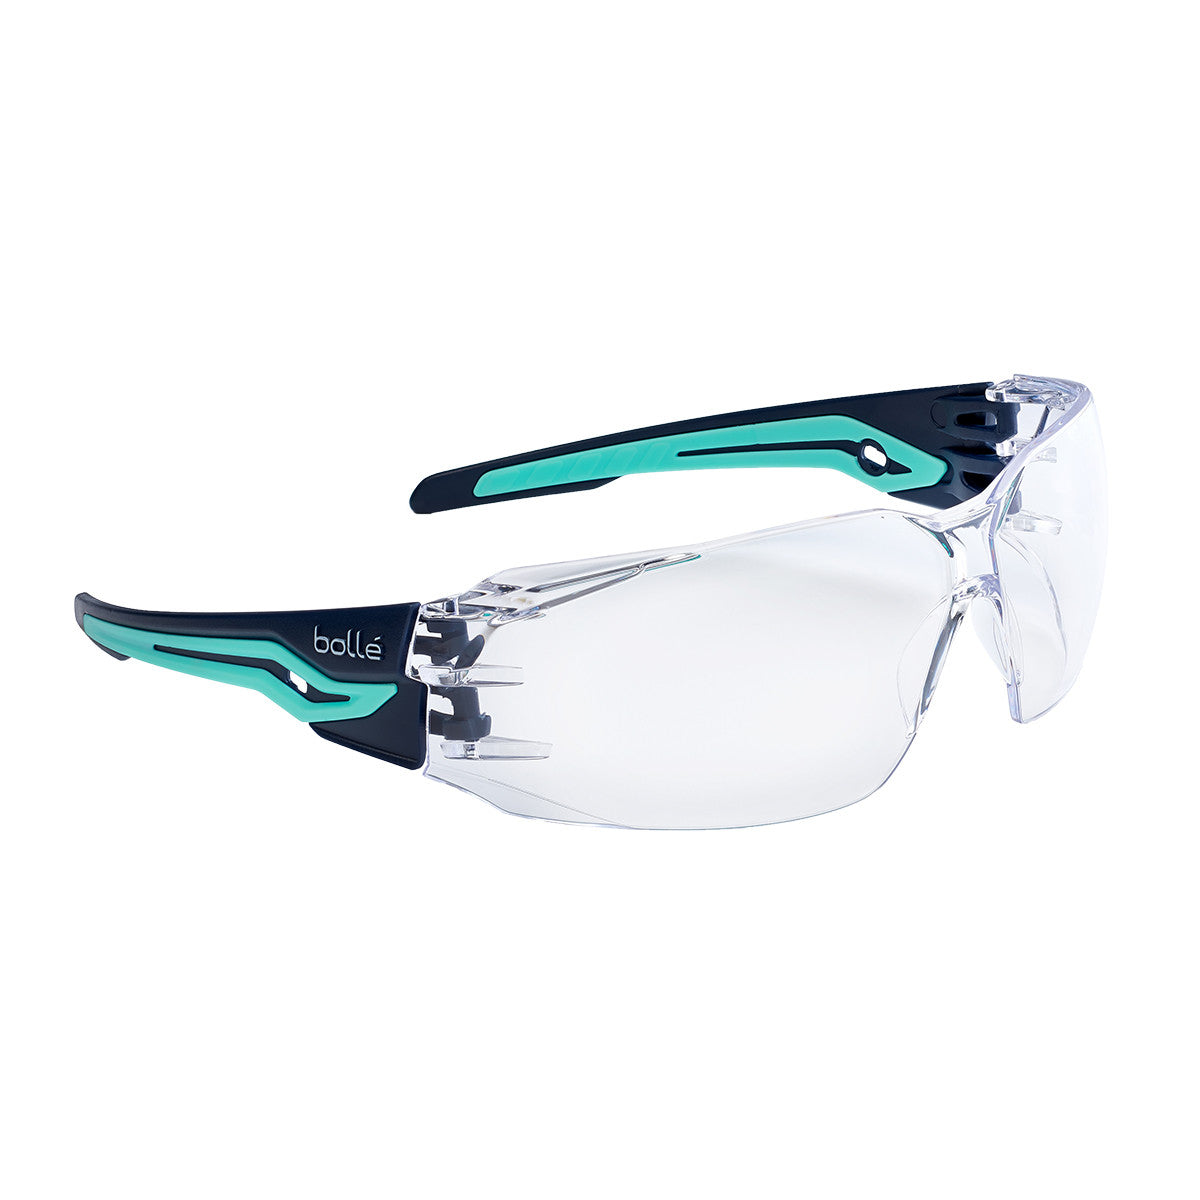 Bollé Safety Silex + Safety Glasses